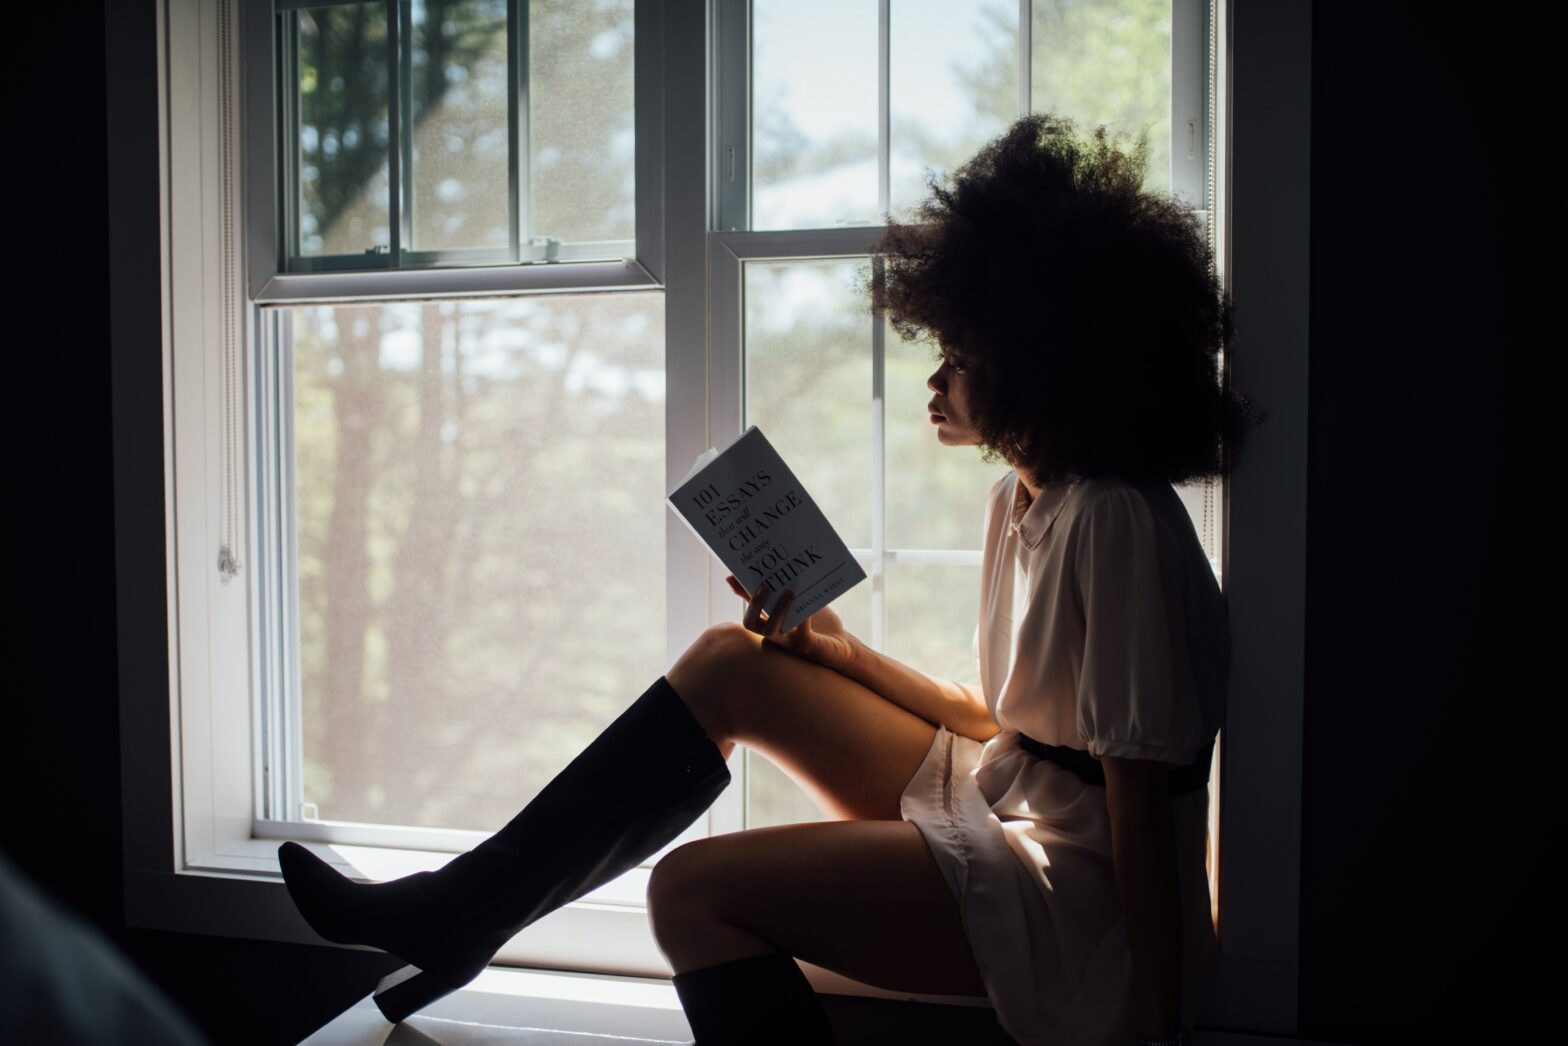 Women reading book in window seal